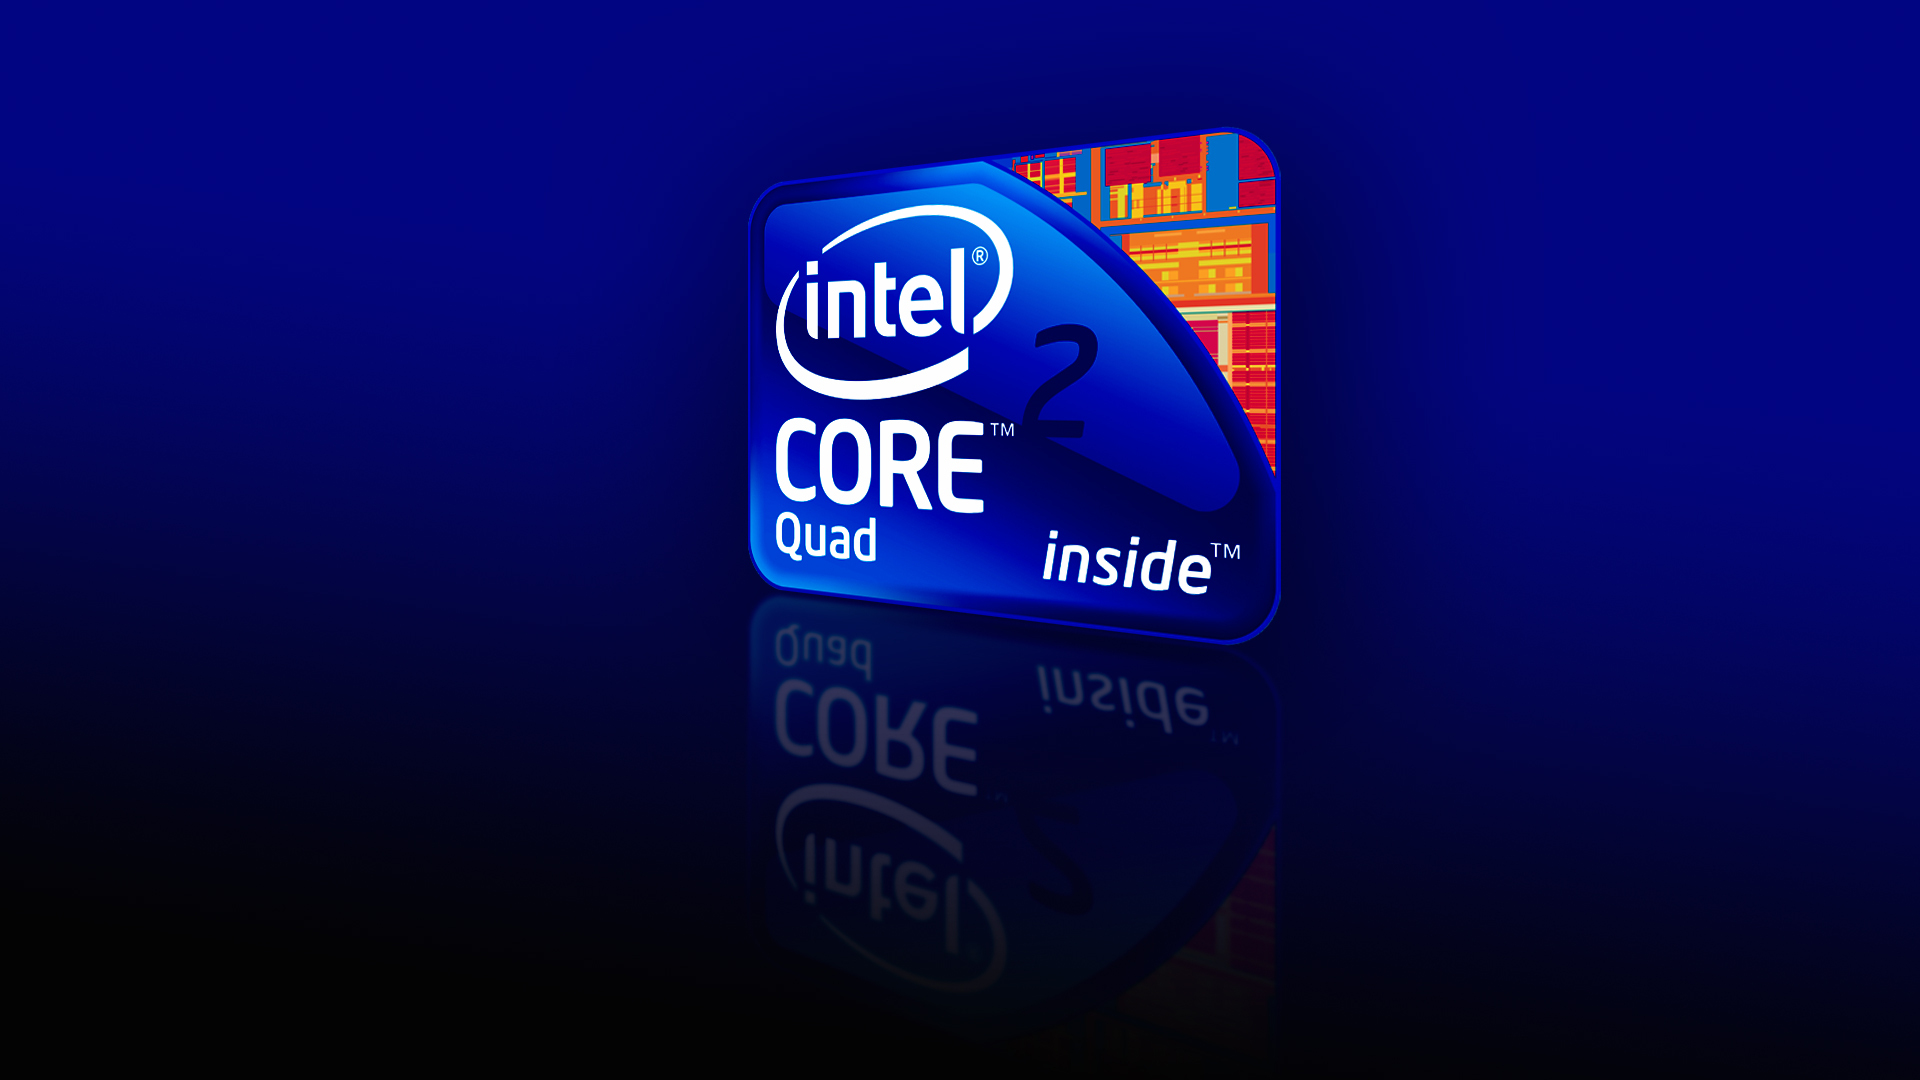 Intel core 2 quad core i7 logo 1080p wallpapers Rumah IT 1920x1080